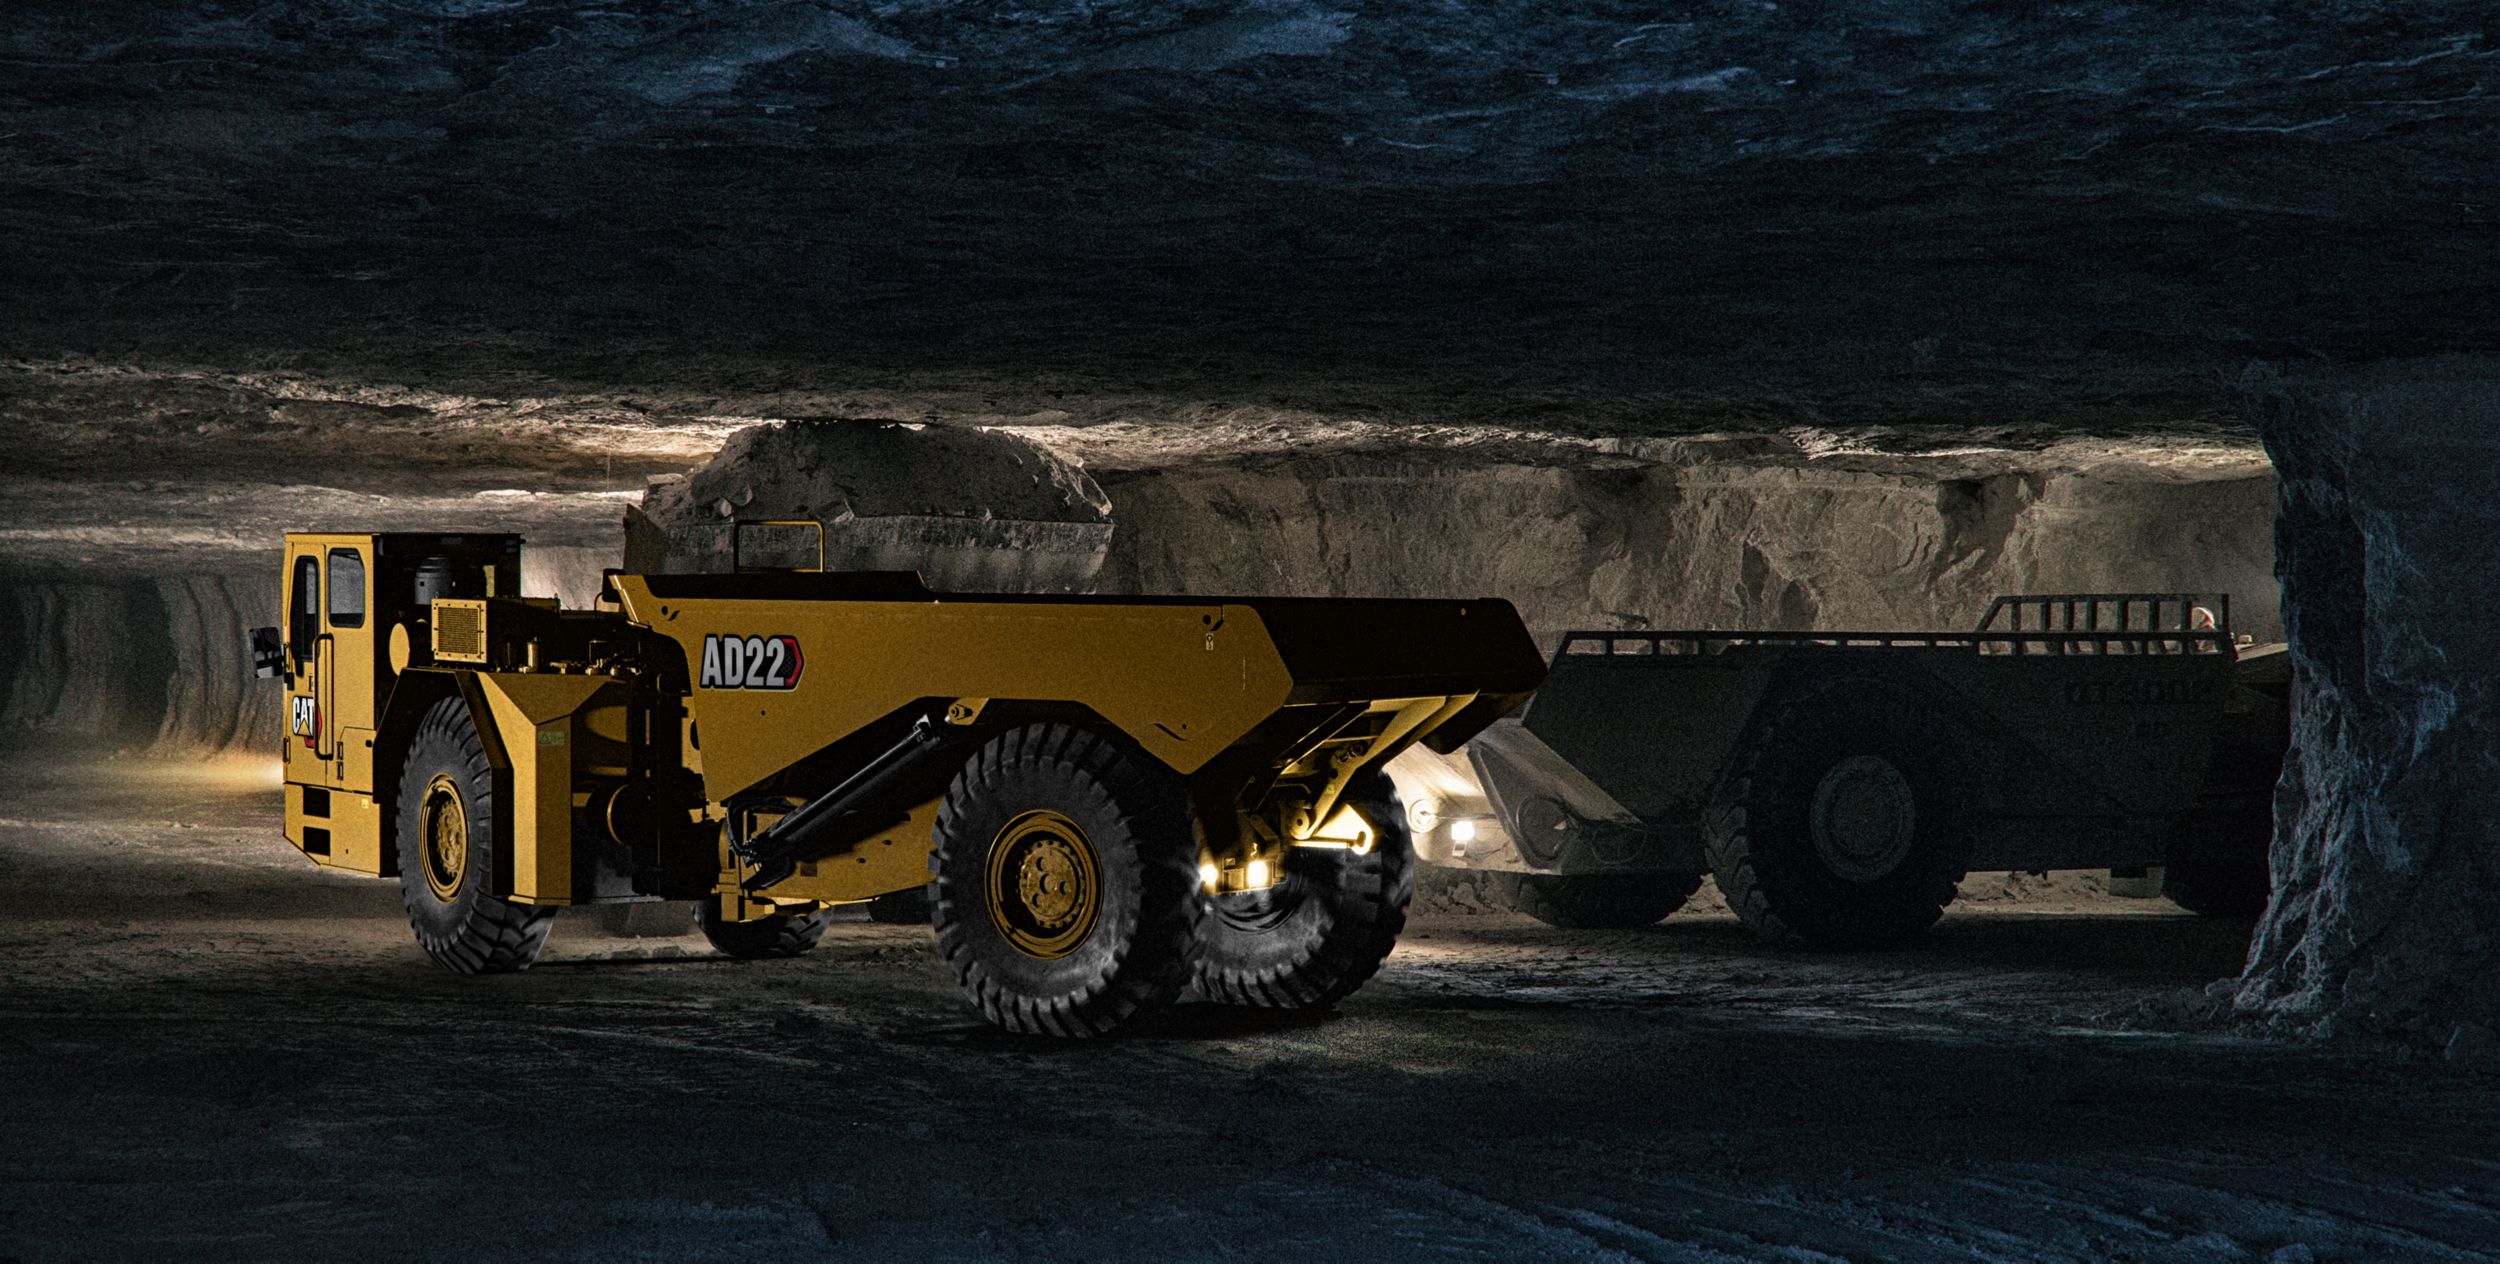 AD22 Underground Mining Truck>